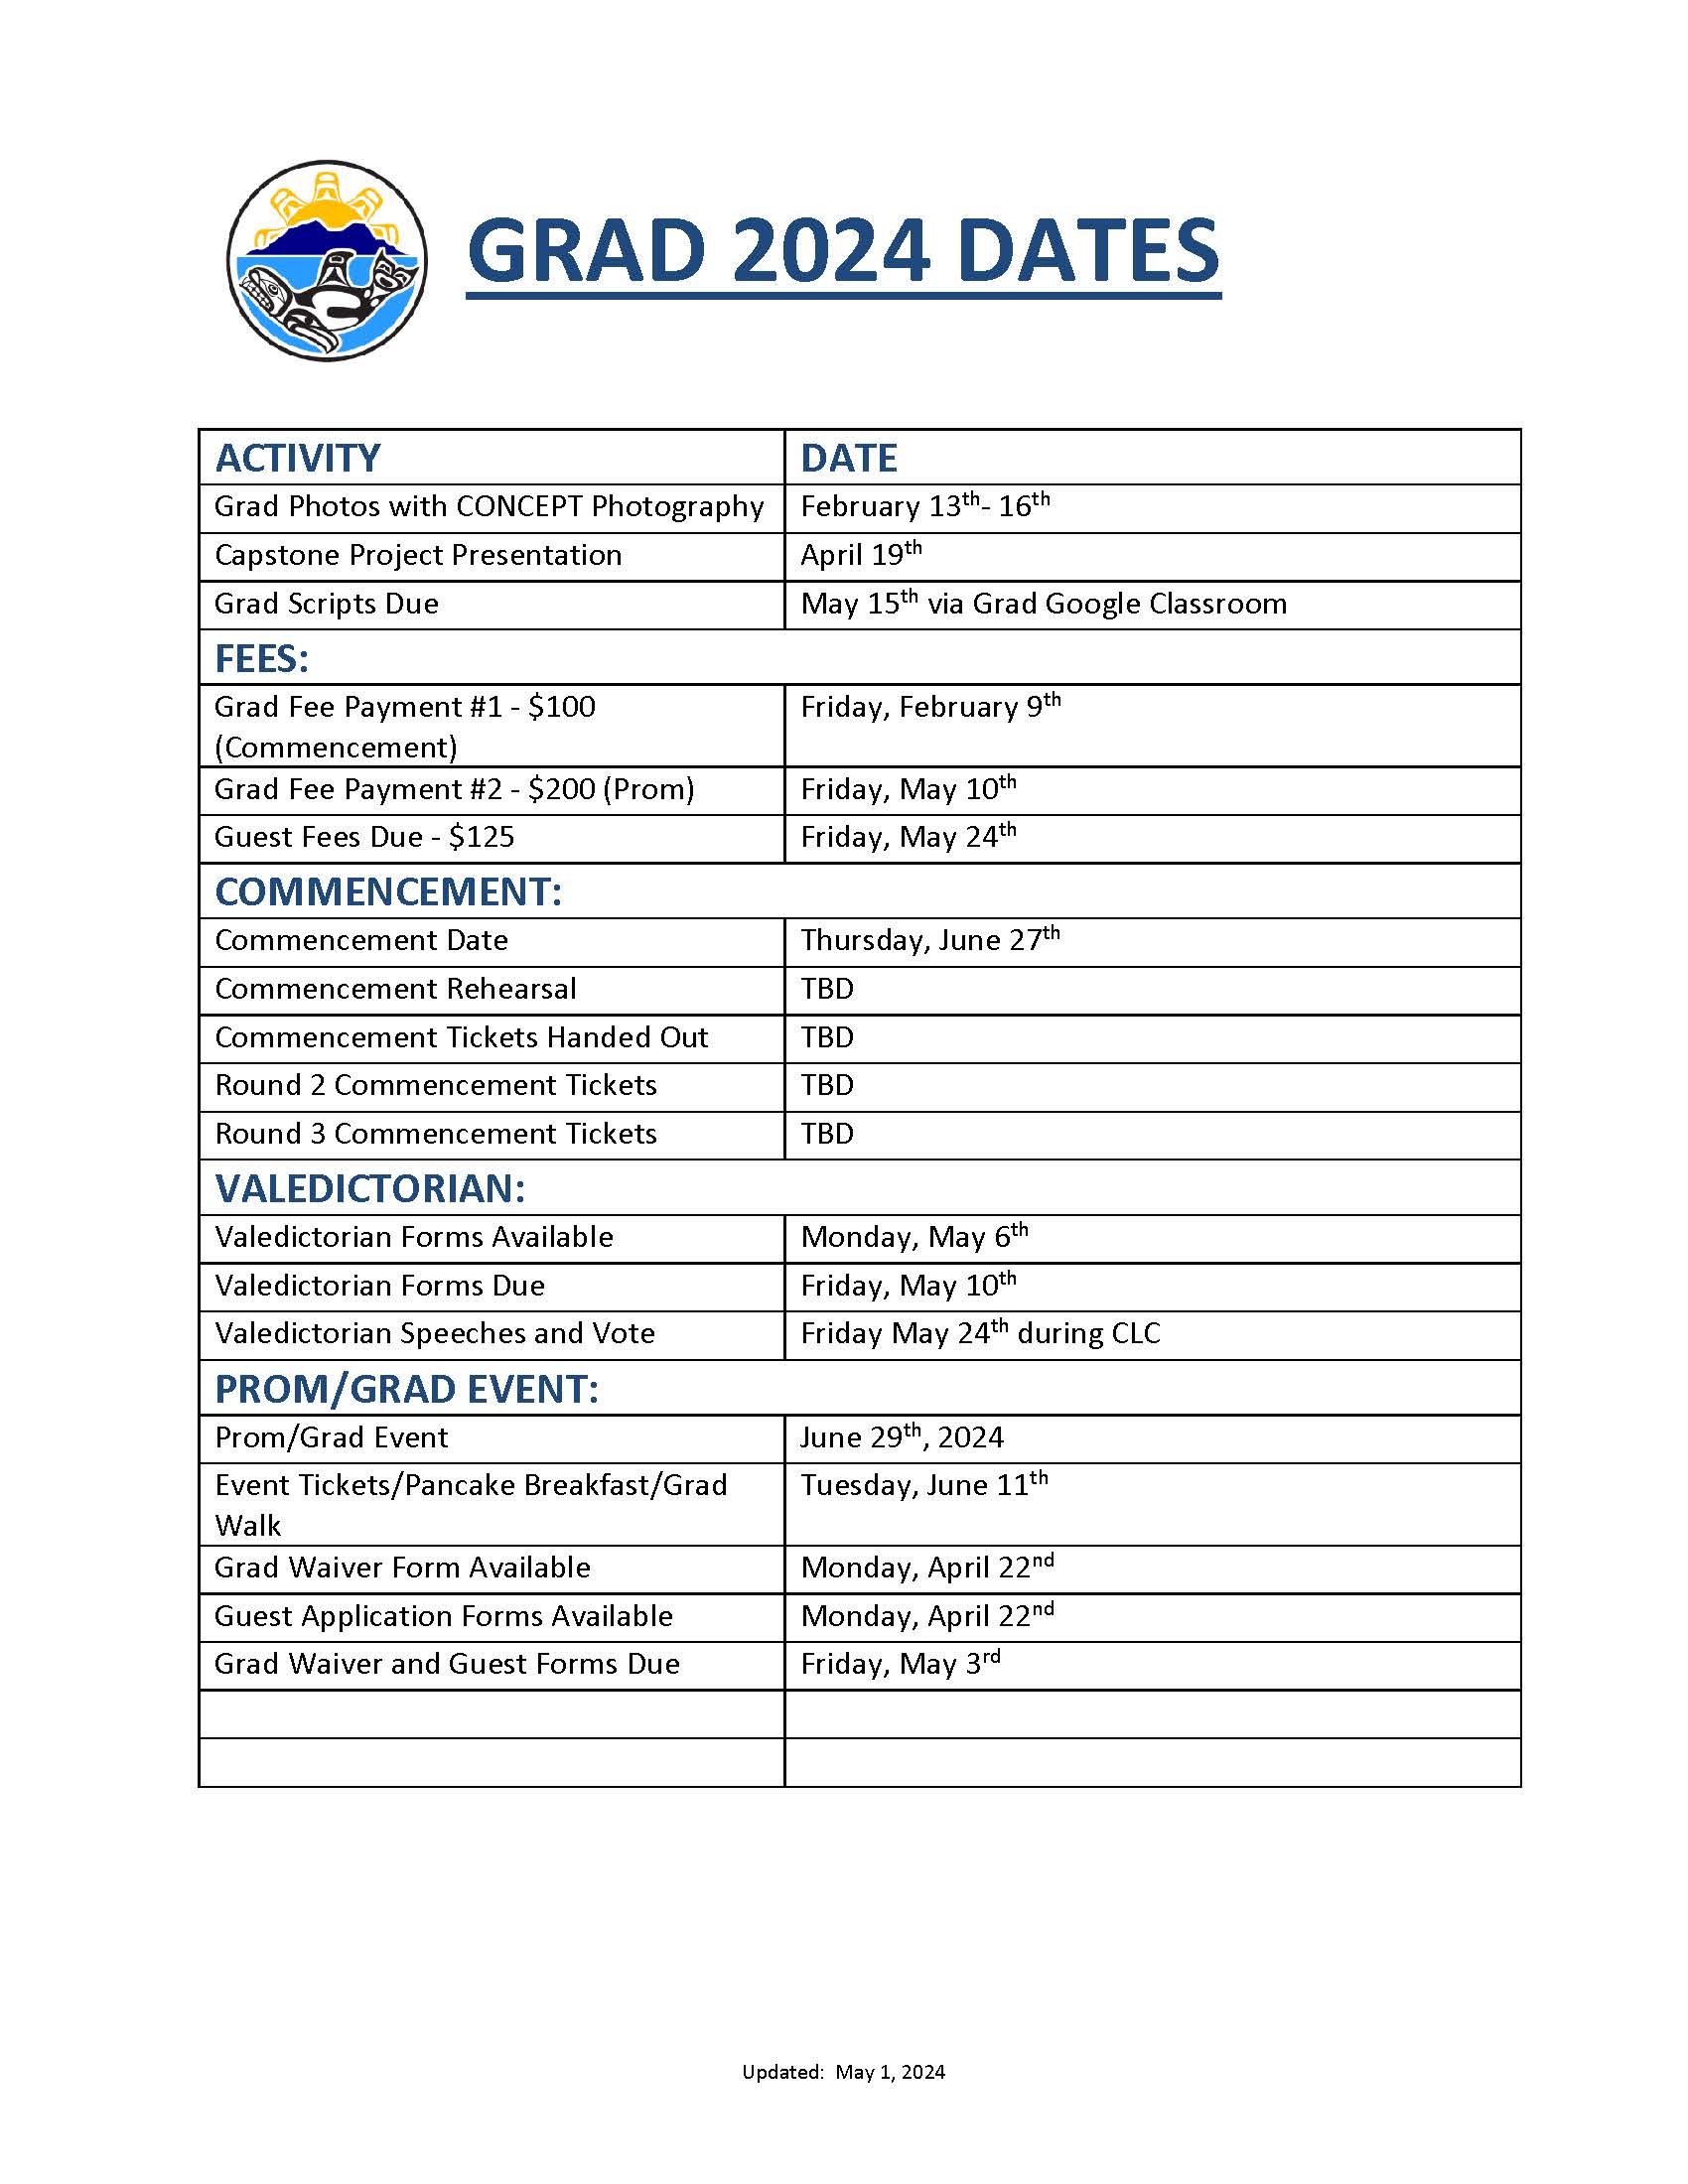 Dates for Grad 2024.jpg